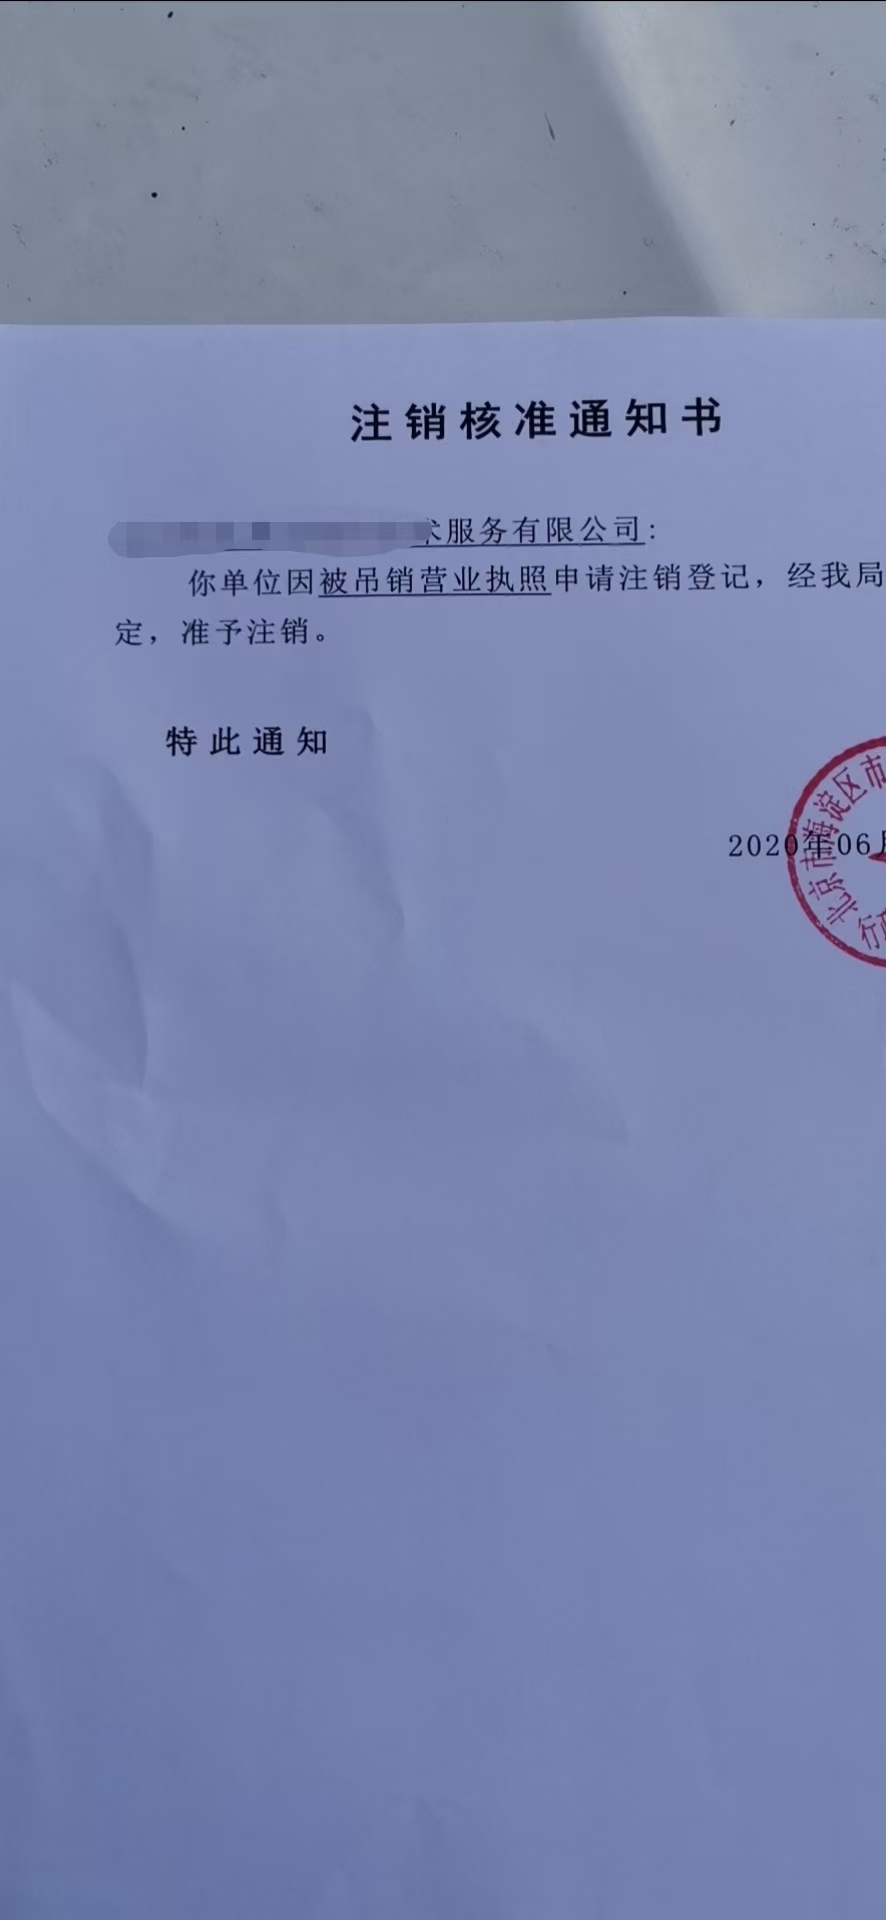 天津申请企业资料丢失注销步骤